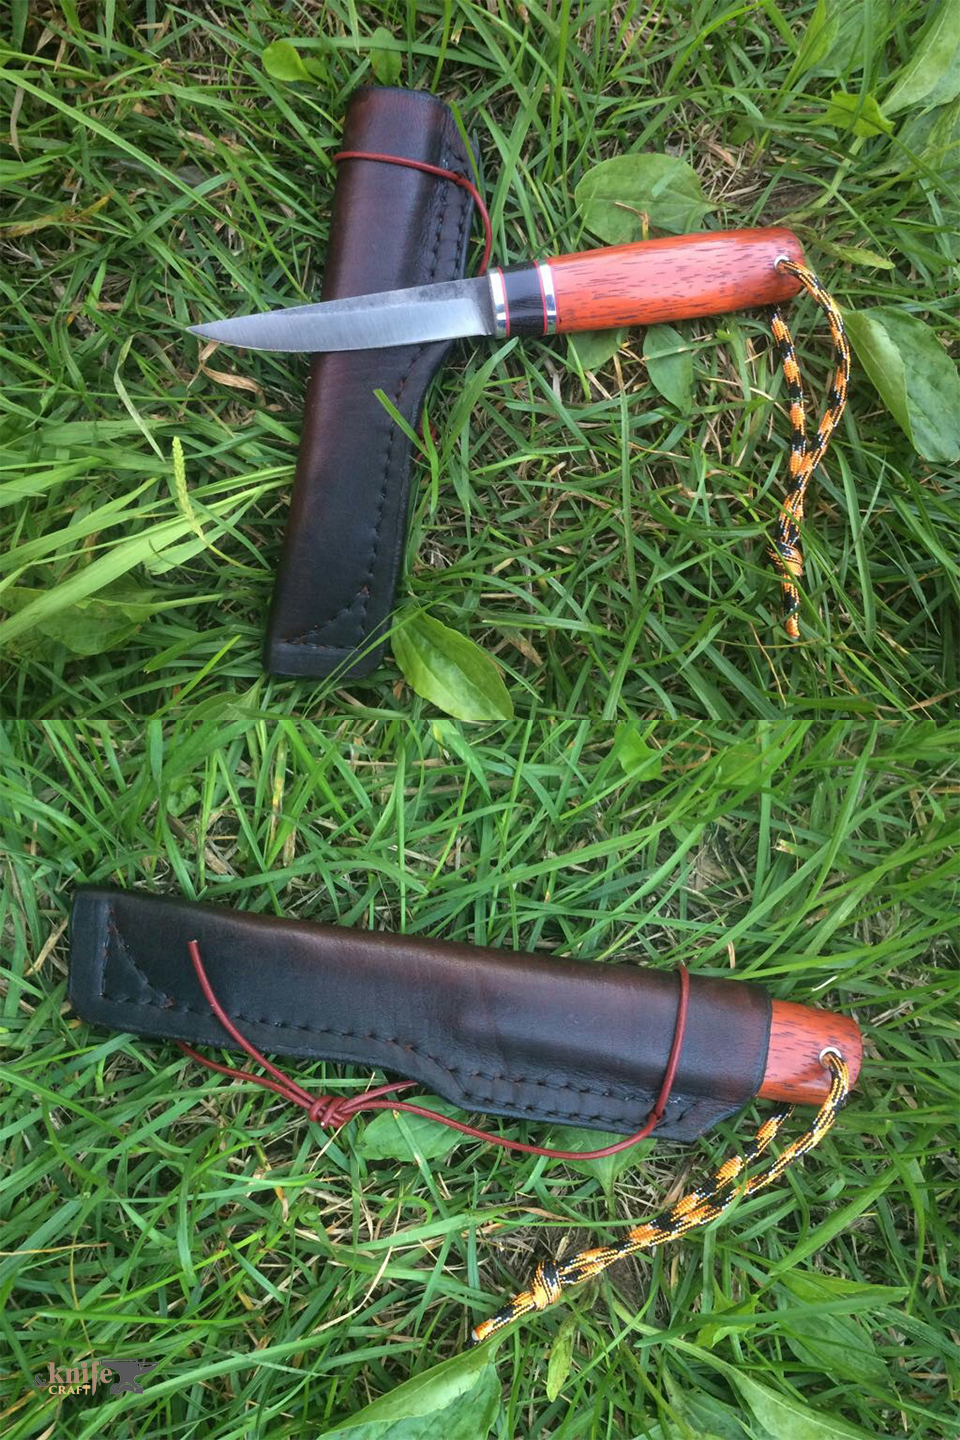 нож средних размеров для похода в кожаных ножнах на заказ в Твери, Торжке